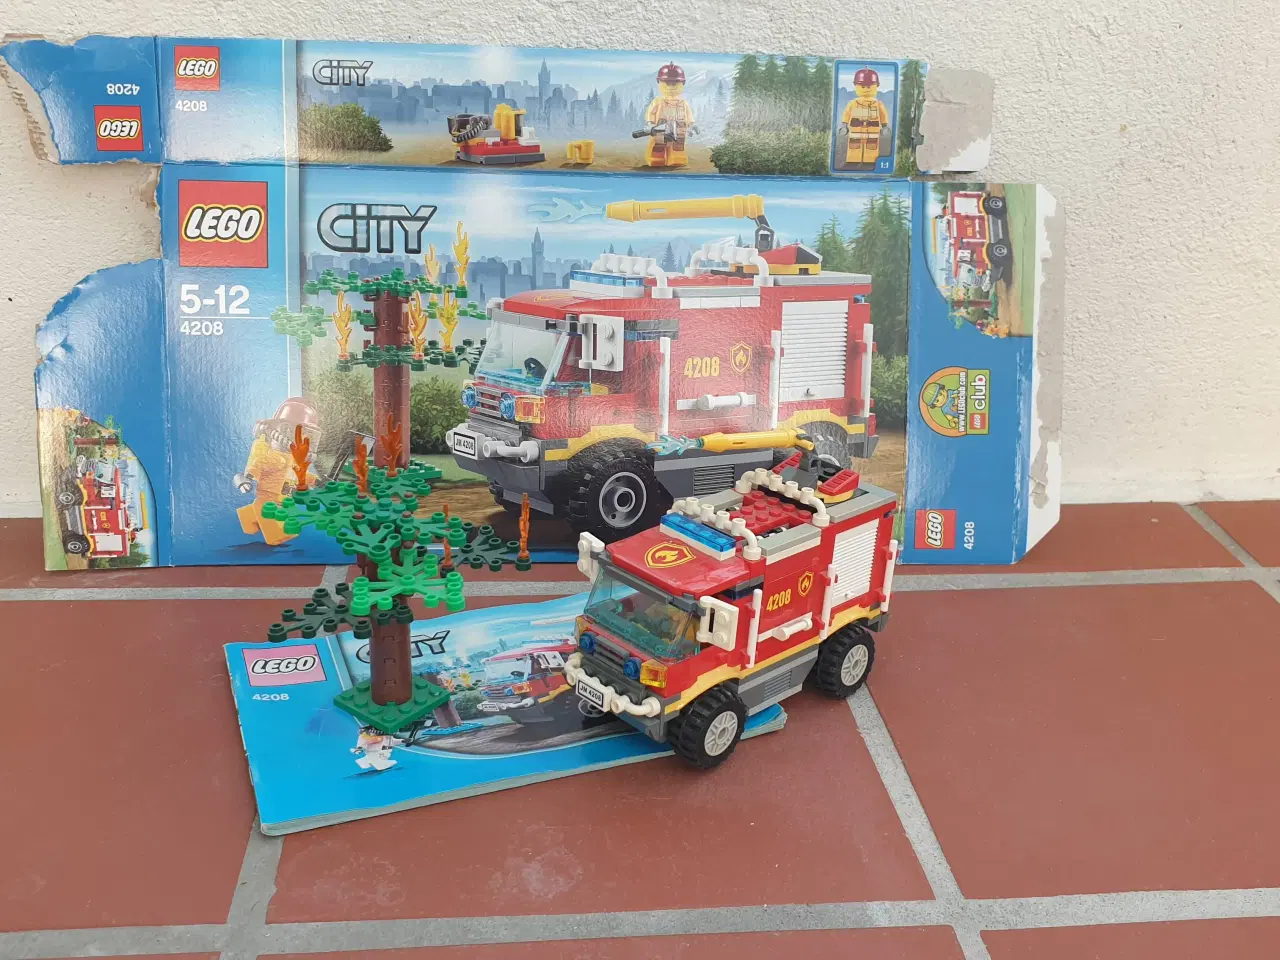 Billede 1 - Lego City 4208